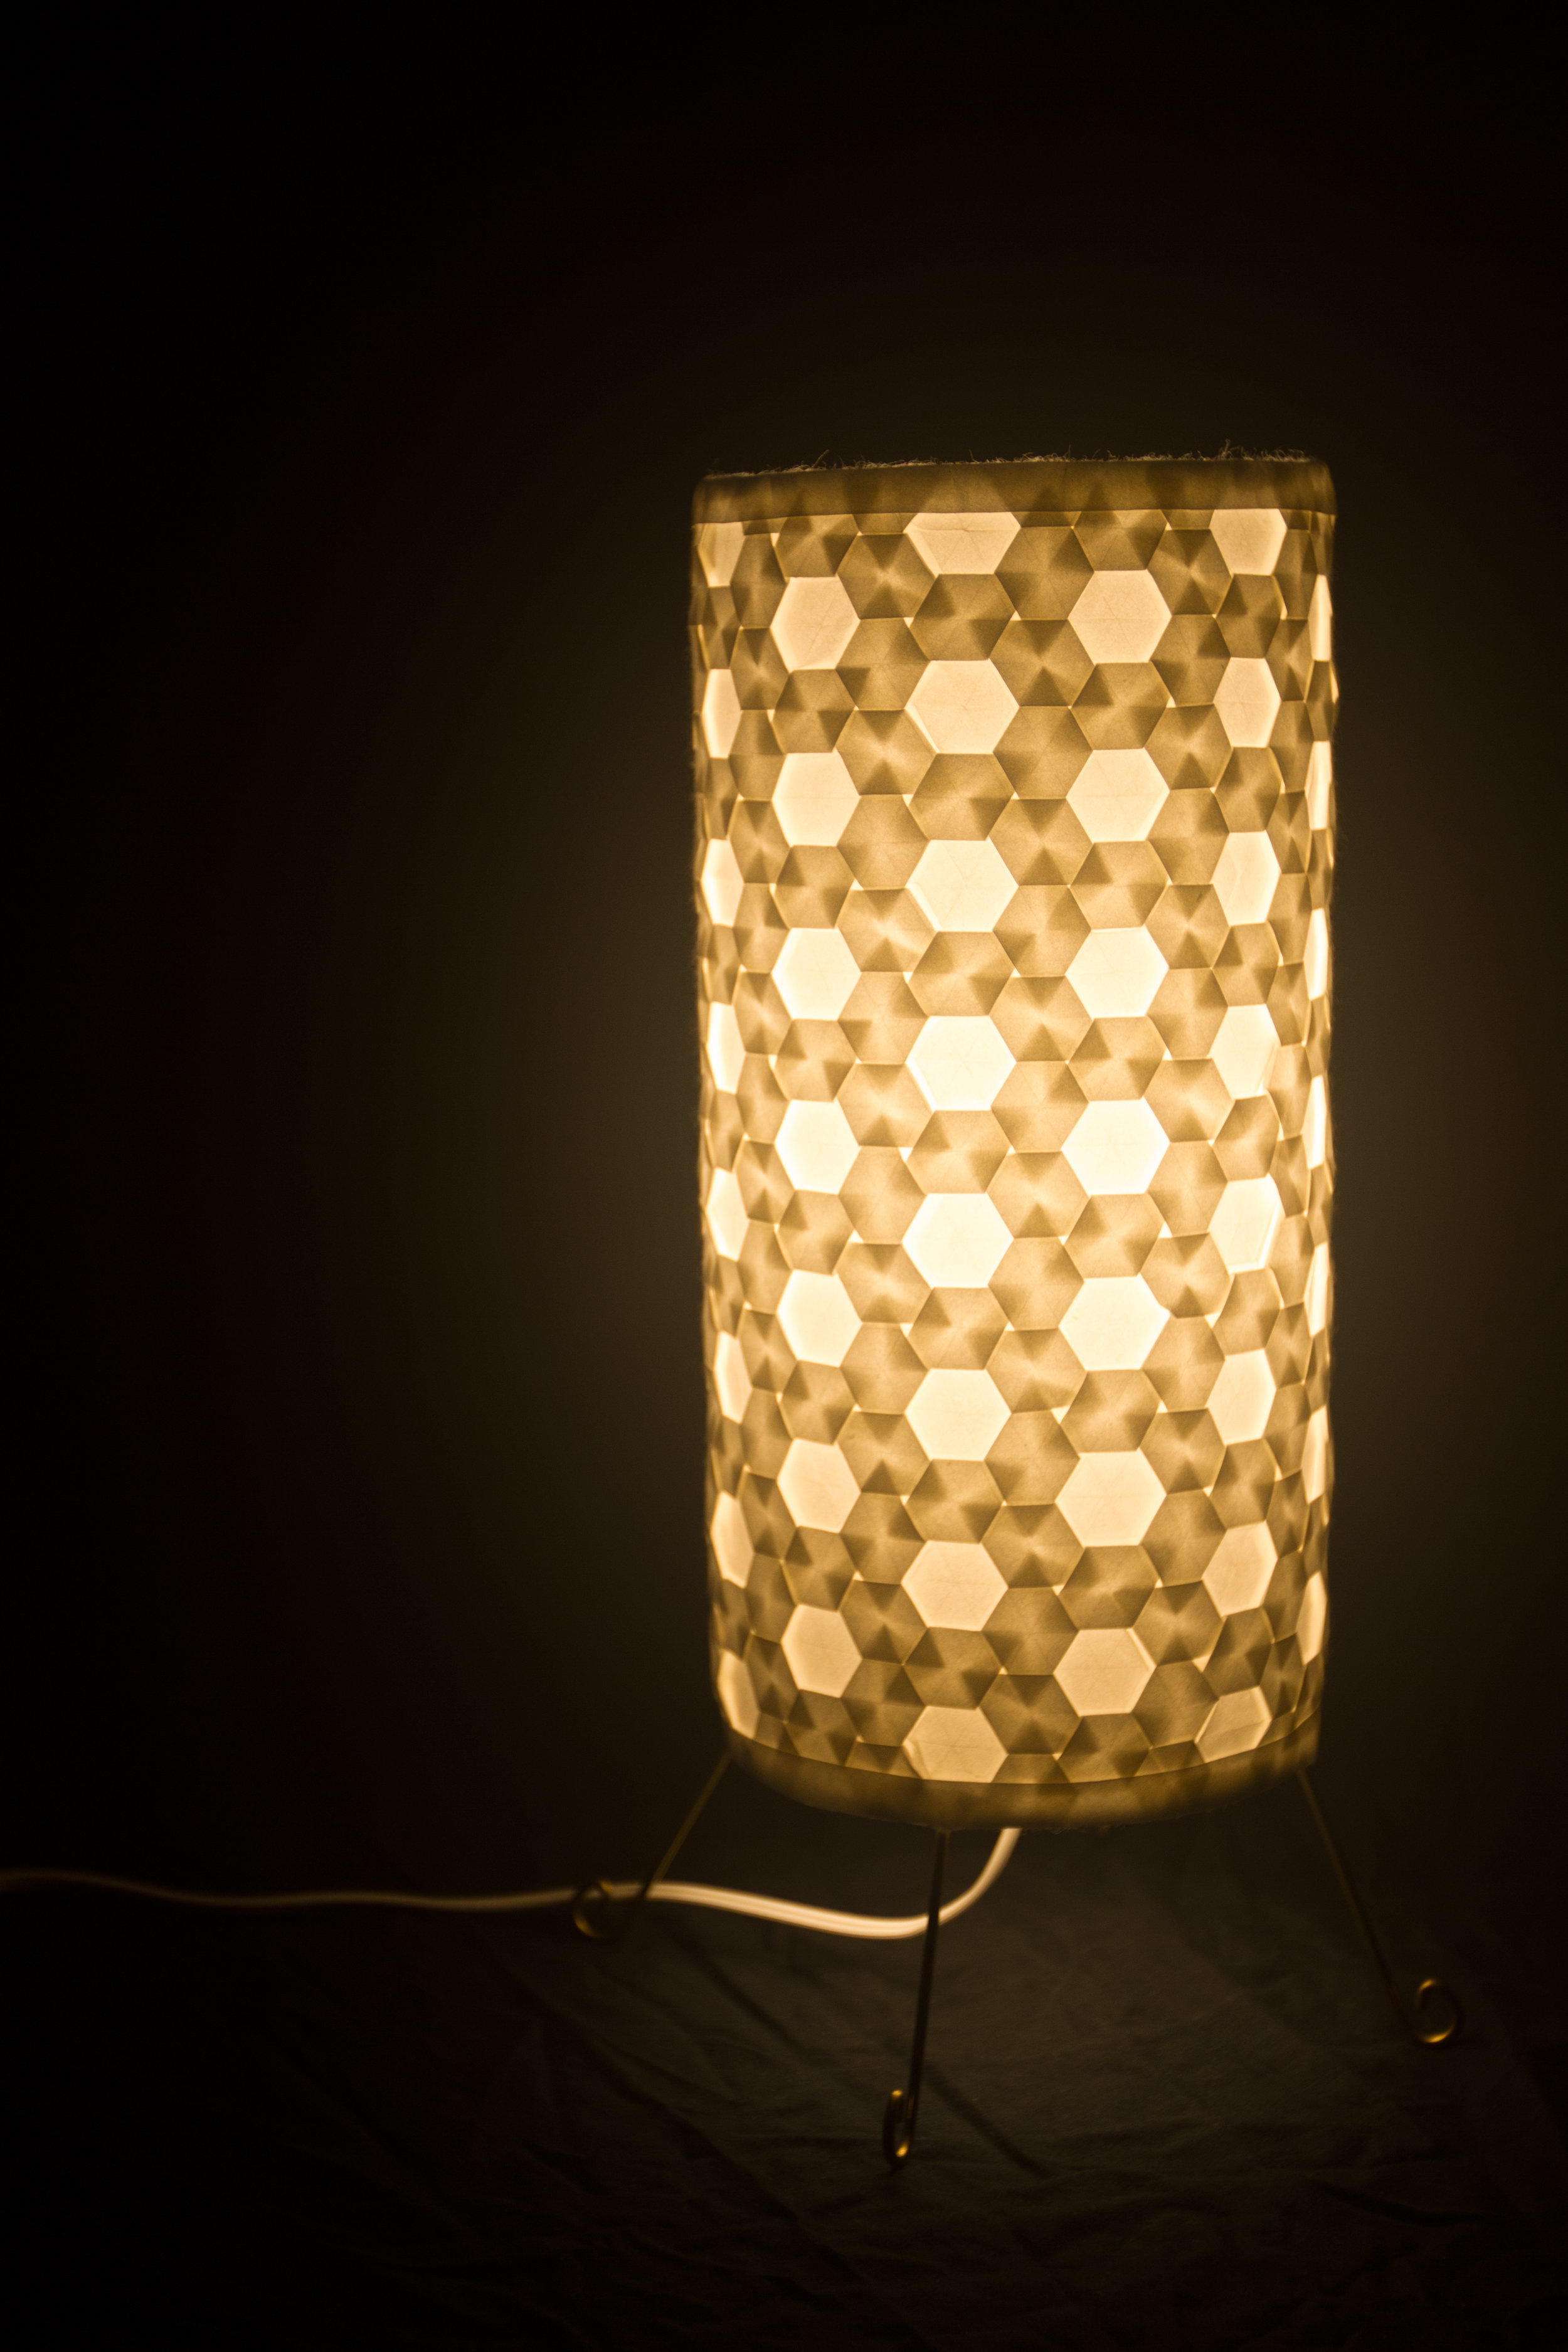 Lamp 03 - "Hive"